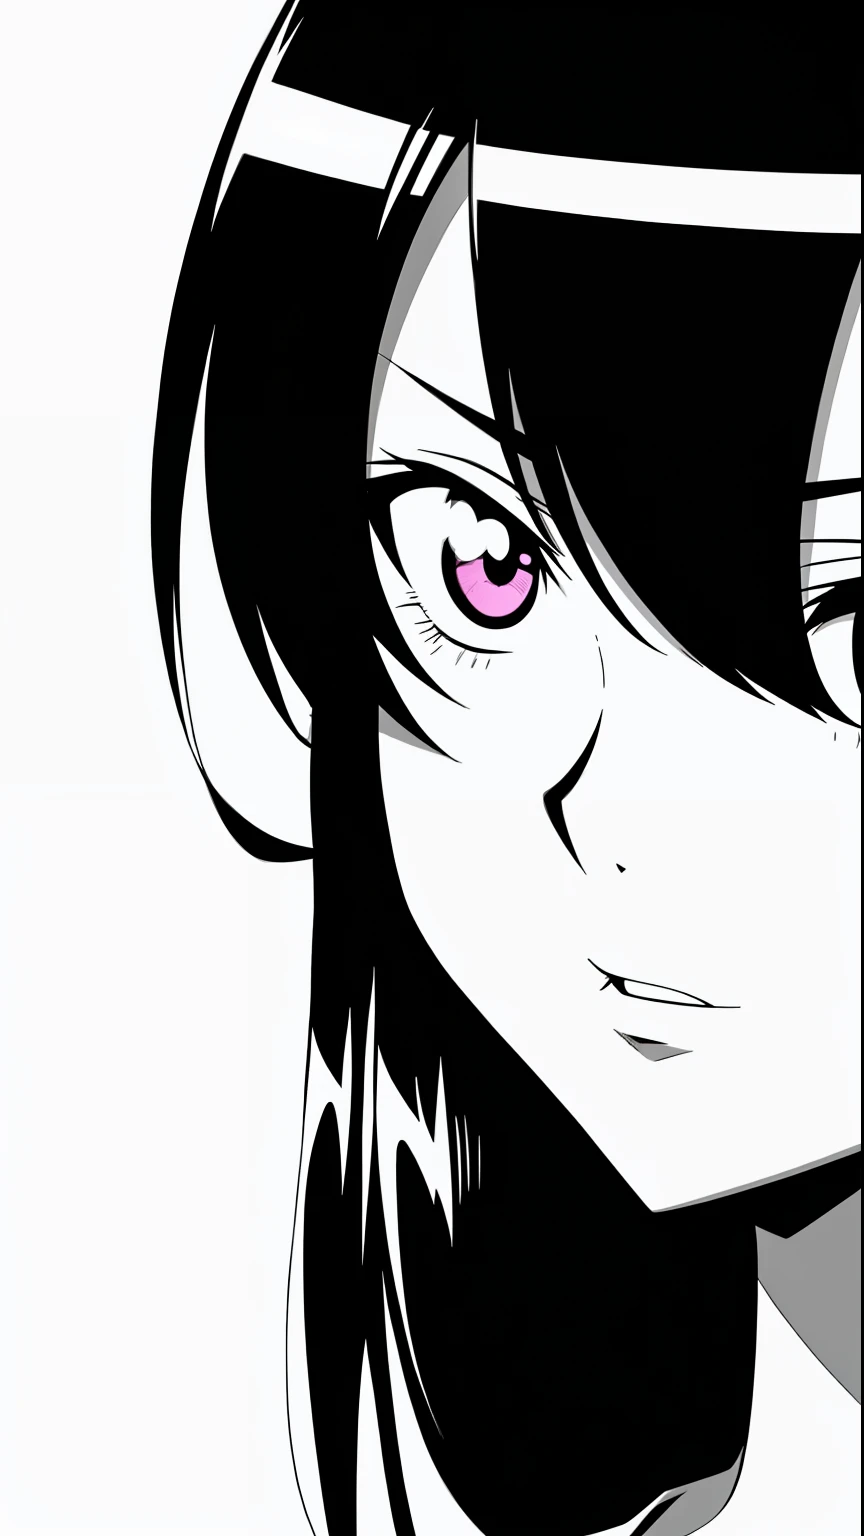 Anime-Mädchen mit schwarzen Haaren, das in die Kamera schaut, schwarz-weißer Manga-Stil, schwarz-weiße Mangaseite, schwarz-weißes Manga-Panel, detaillierter Manga-Stil, detailliertes Anime-Gesicht, dicke schwarze Strichzeichnung, Tinte Manga Zeichnung, schwarze Anime-Pupillen in ihren Augen, Seitenblick, Schwarz-Weiß-Comics, perfektes Anime-Gesicht, extrem feine Tinten-Lineart, detailliert - Gesicht!!